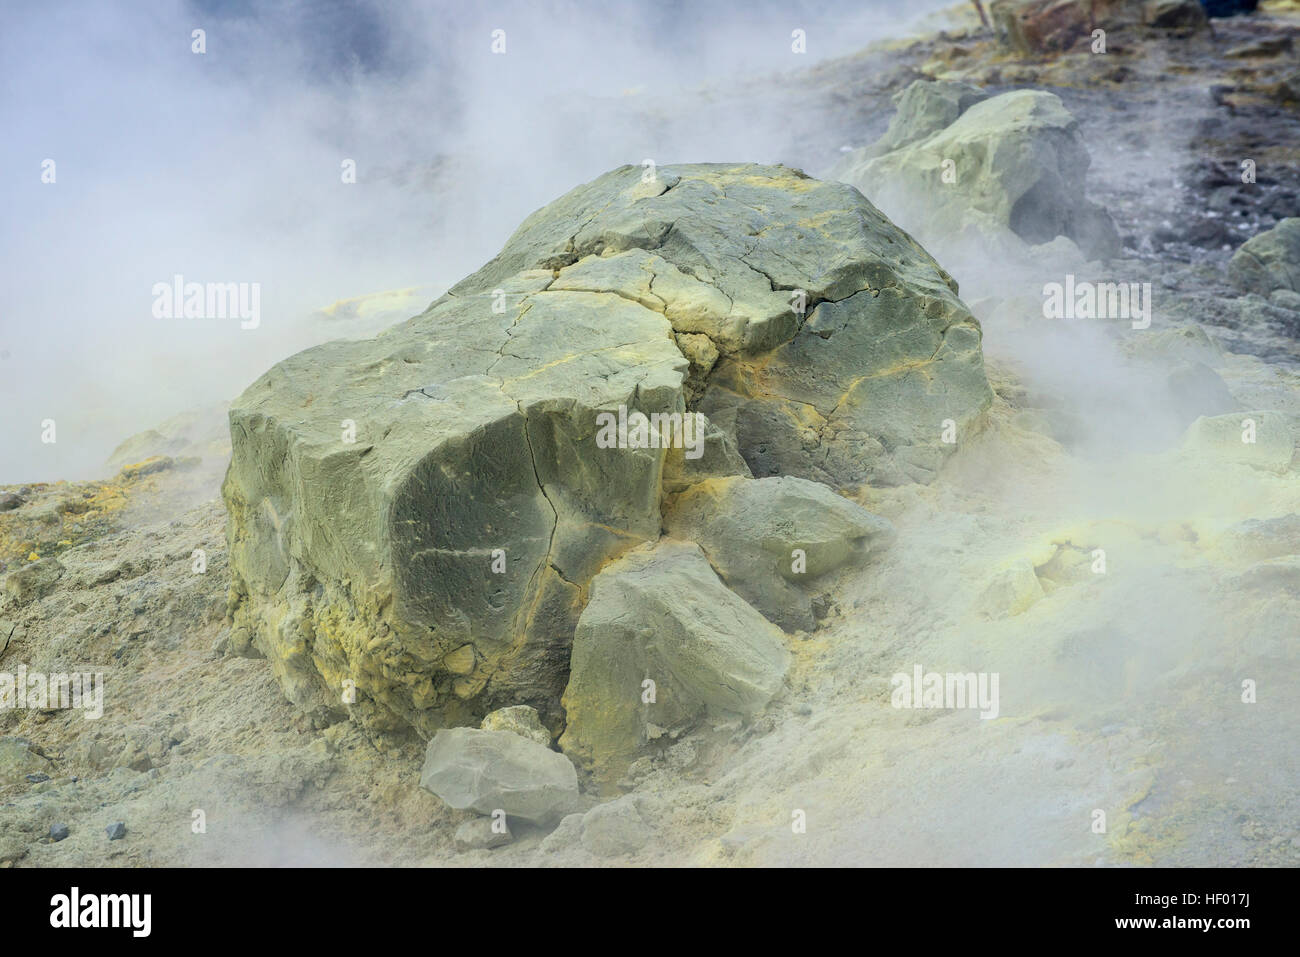 Sulfur vapor, Vulcano Island, Aeolian Islands, Italy Stock Photo